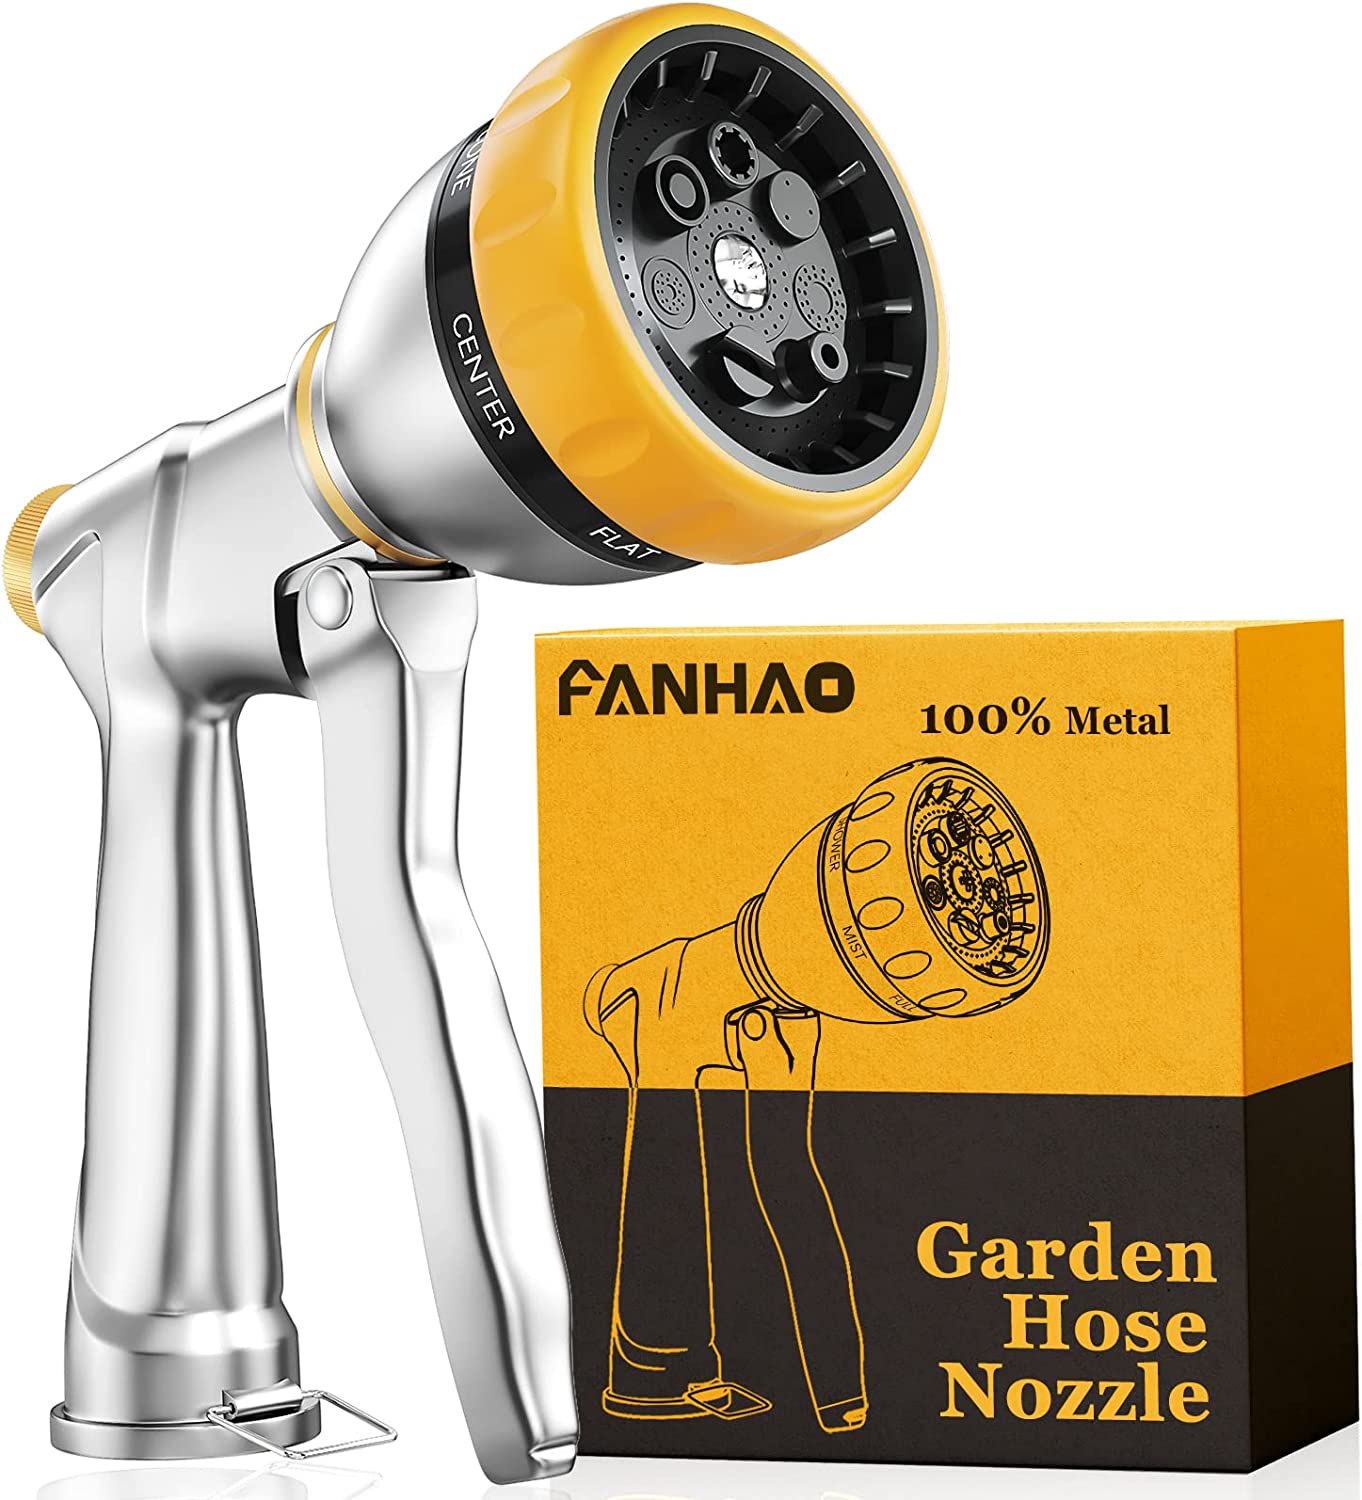 FANHAO Garden Hose Nozzle Sprayer 100% Heavy Duty Metal Water Hose Sprayer